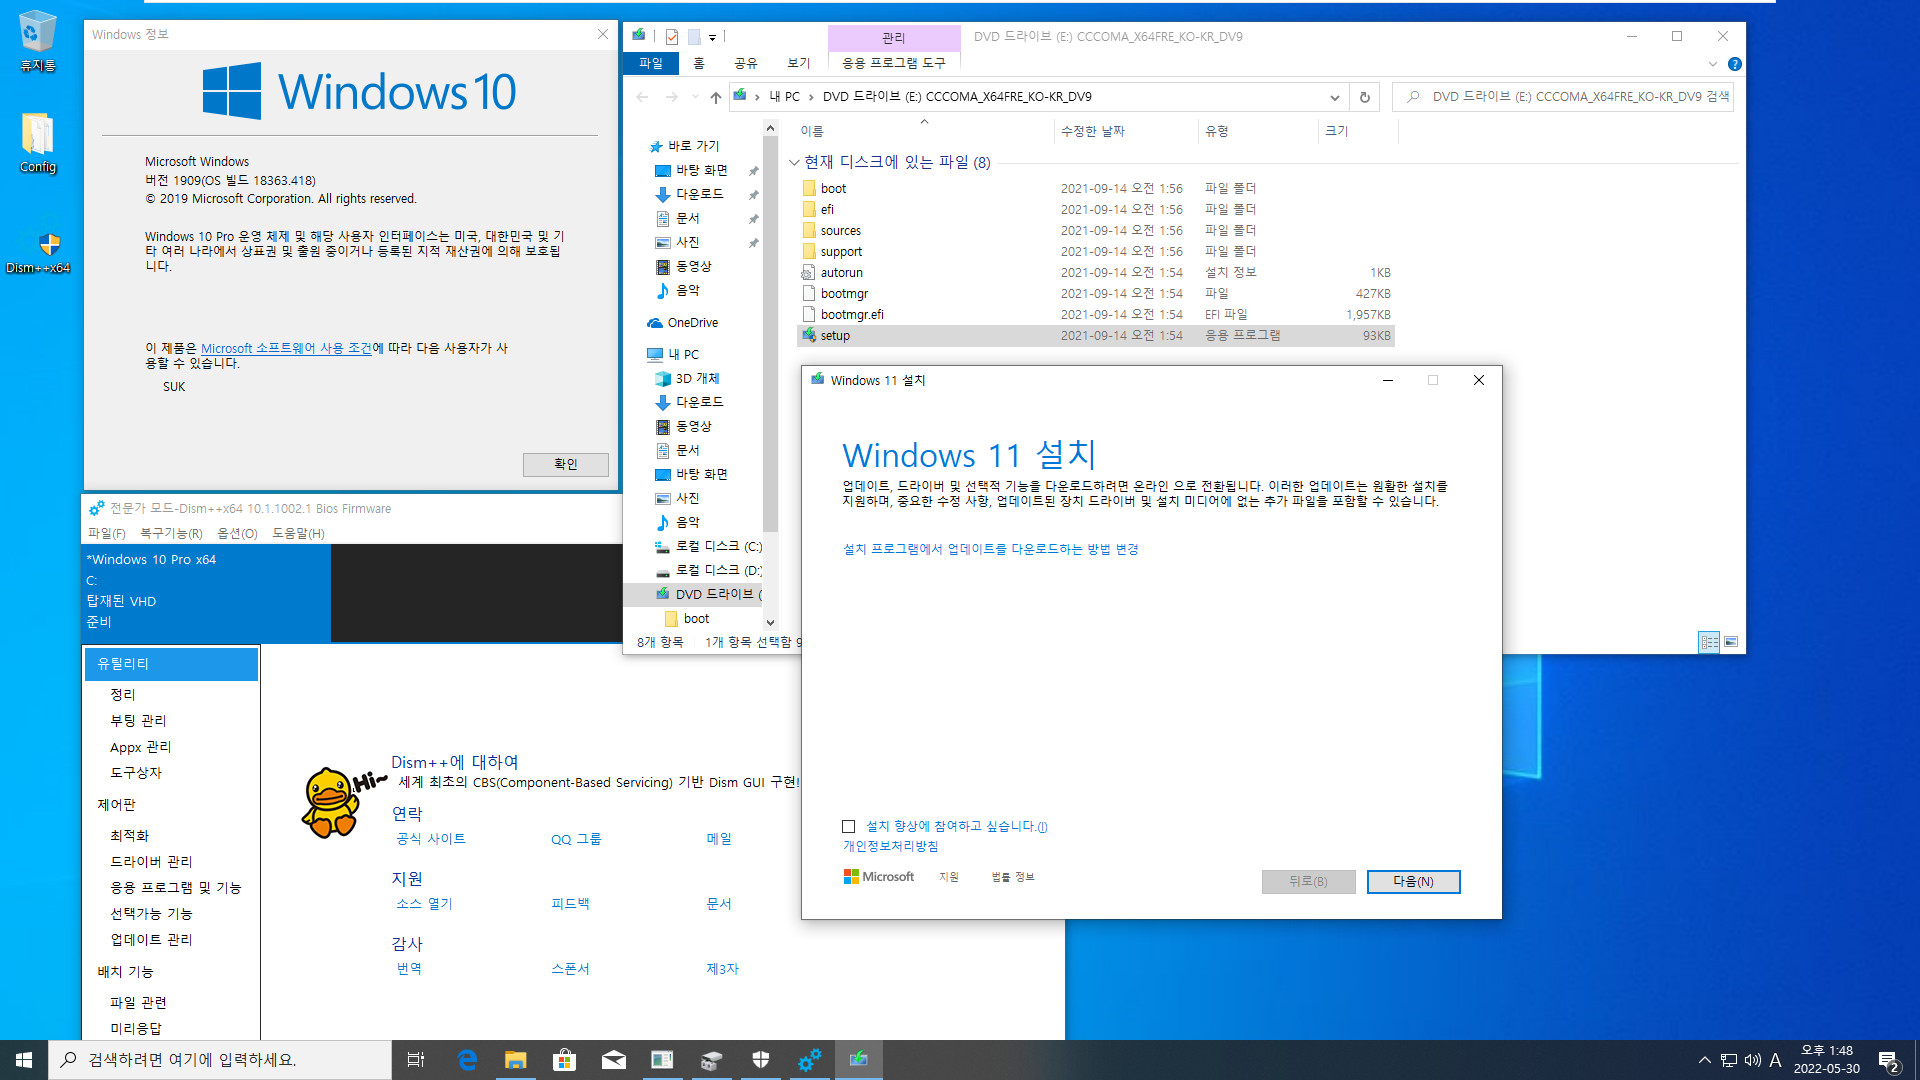 VHD에서는 윈도우 버전 업데이트가 되지 않습니다 - 참고로 윈도우 10 버전 2004부터는 윈도우 + 누적 업데이트까지 같기 때문에 VHD에서도 버전 업데이트가 됩니다 2022-05-30_134846.jpg